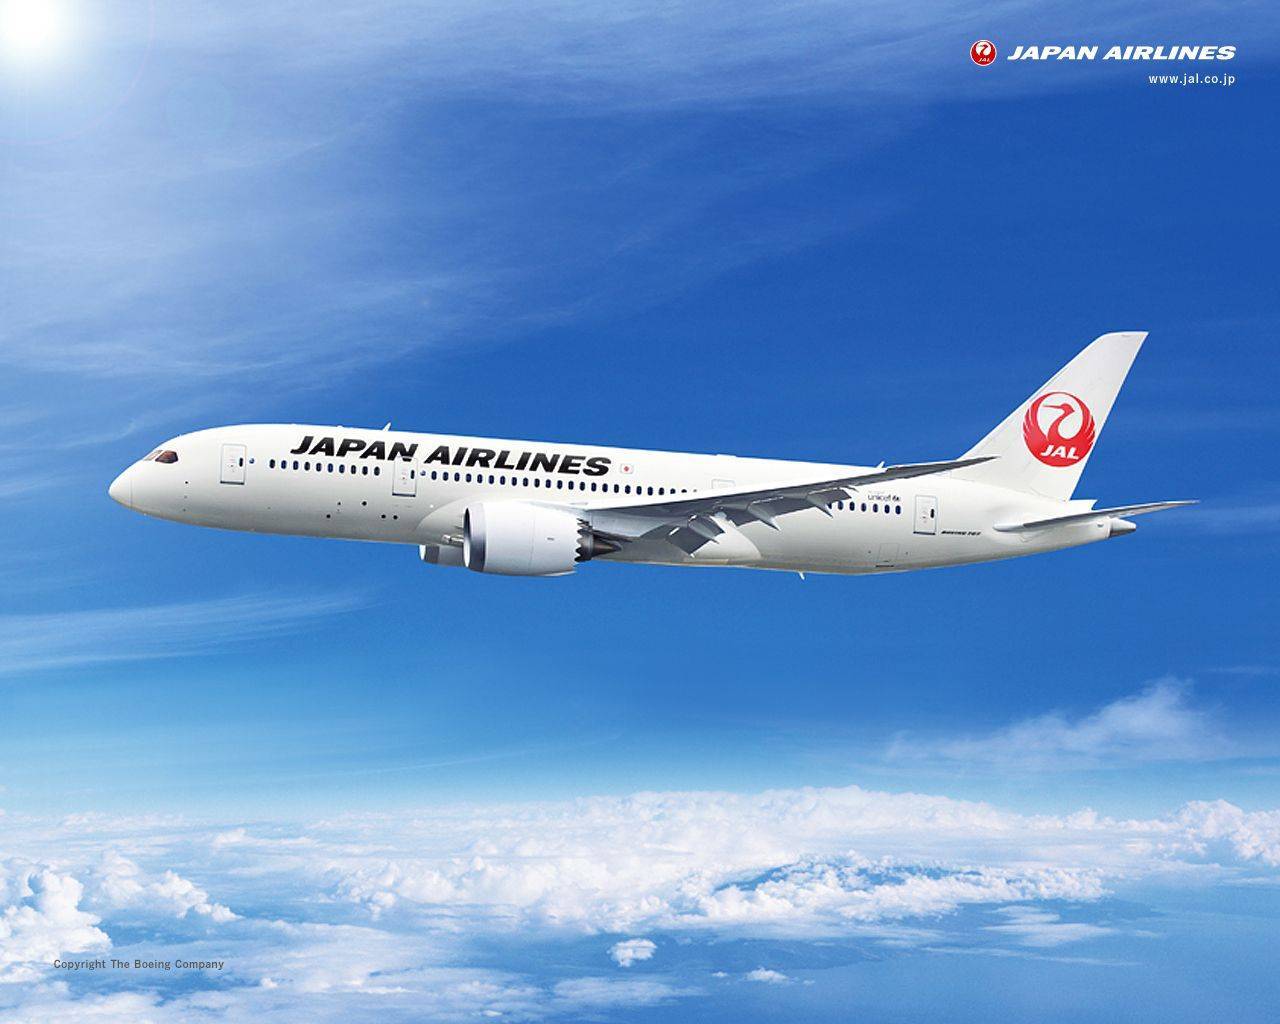 Японские авиалинии. авиакомпания japan airlines - miuki mikado • виртуальная япония